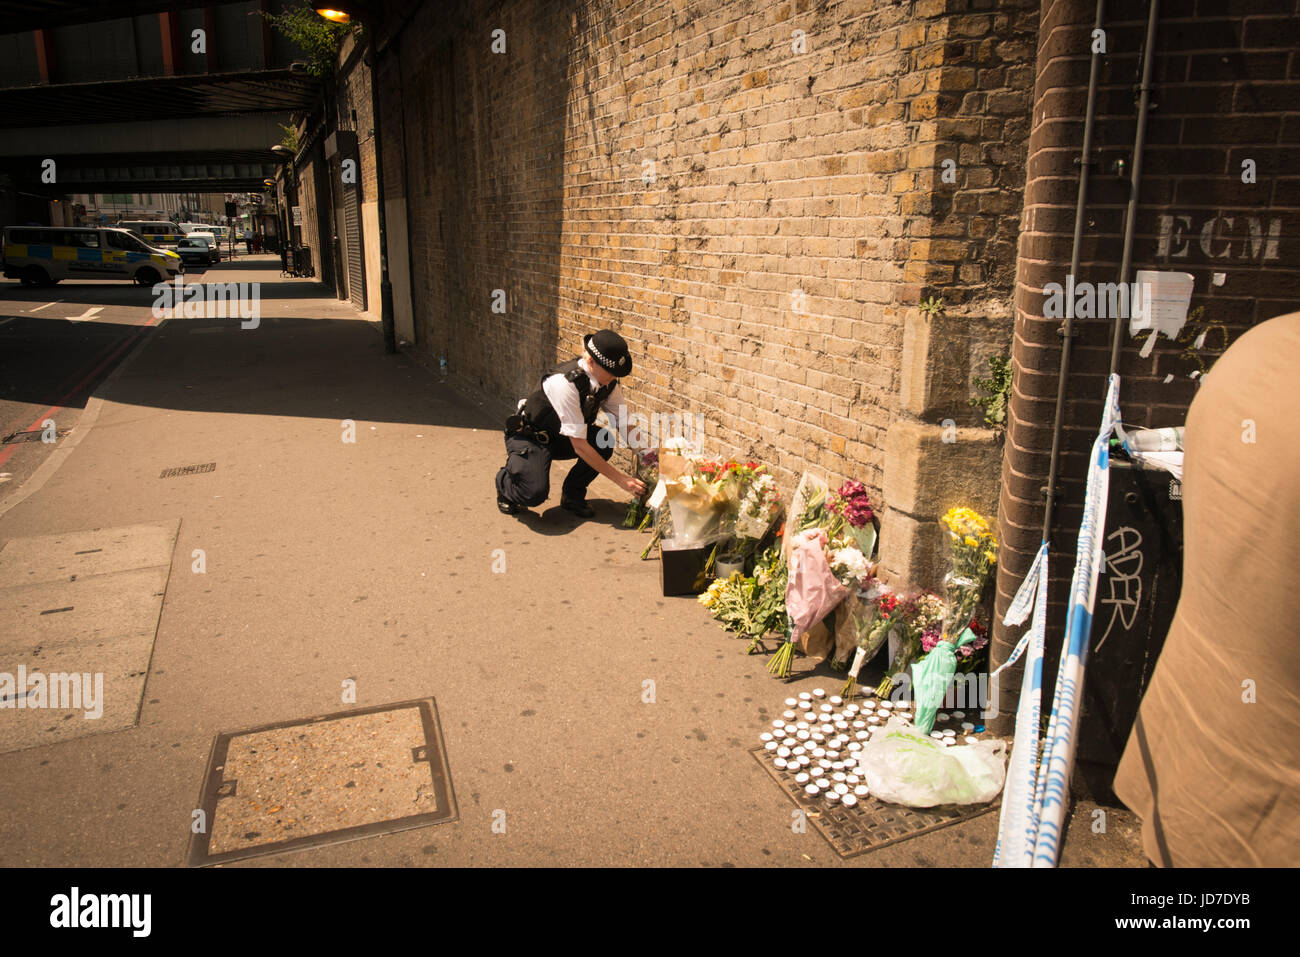 Finsbury Park, London, Regno Unito. 19 giugno 2017. La folla si sono riuniti a seguito di un sospetto attacco terroristico in precedenza questa mattina. Nella foto: una poliziotta luoghi fiori vicino alla scena del crimine. Credito: Byron Kirk/Alamy Live News Foto Stock